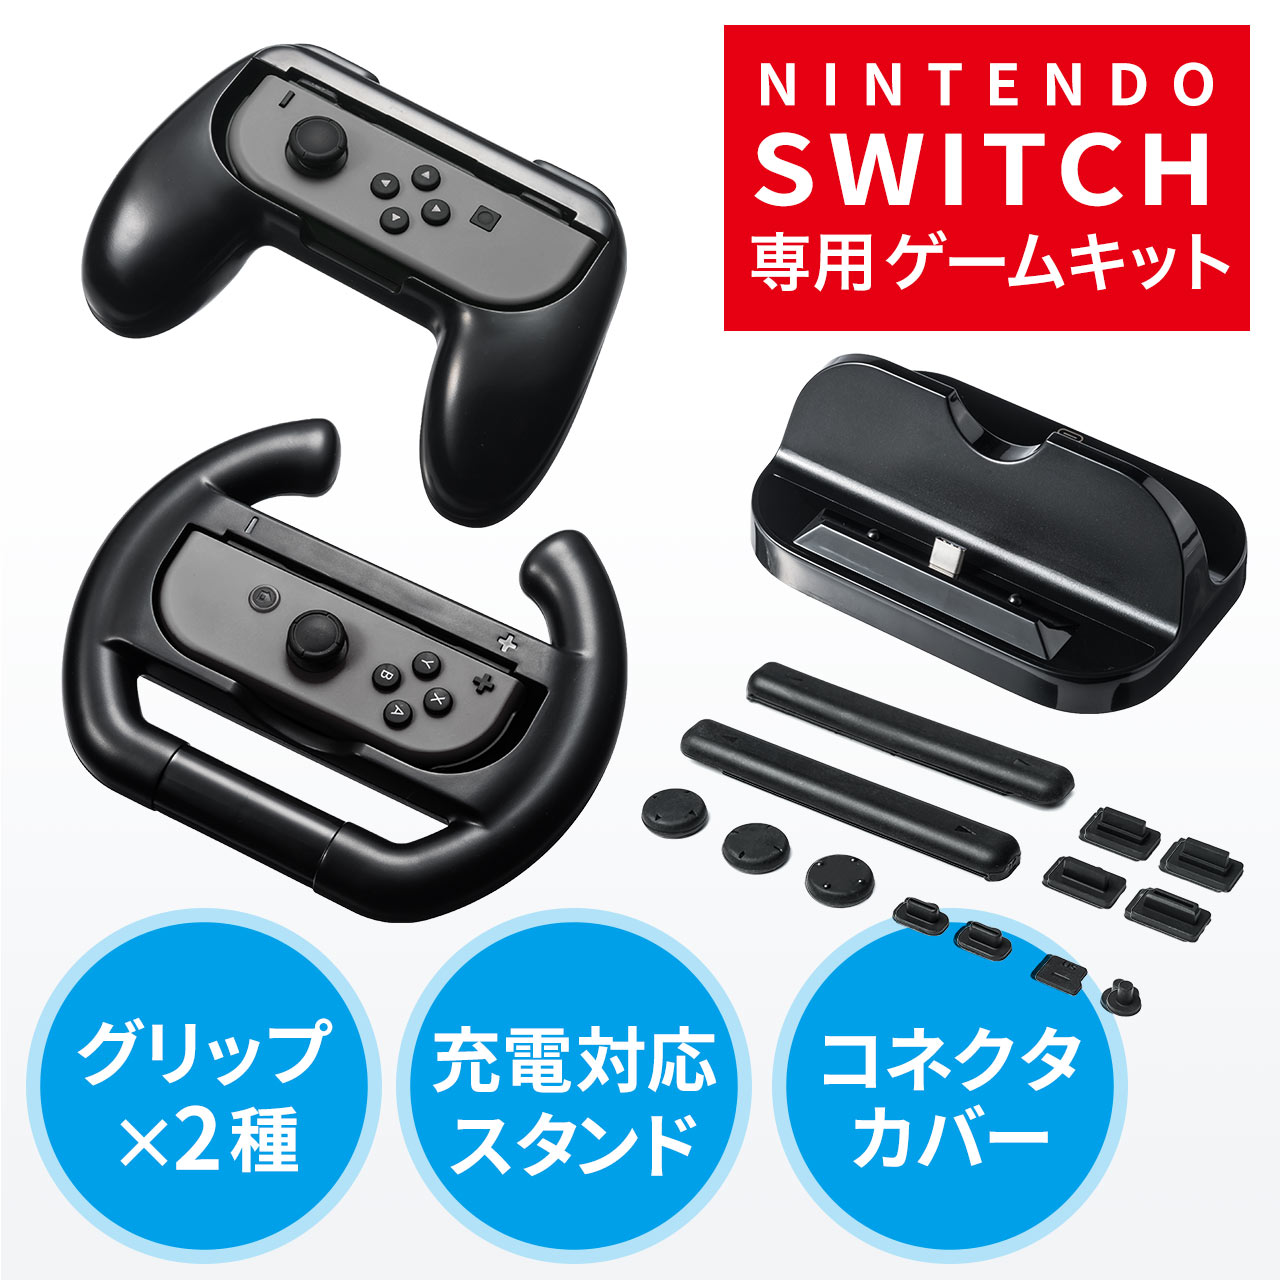 Nintendo Switch マルチファンクションキット（ニンテンドースイッチ・ゲームパッド型・ハンドル型・クレードルスタンド・コネクタカバー）  200-NSW004の販売商品 通販ならサンワダイレクト